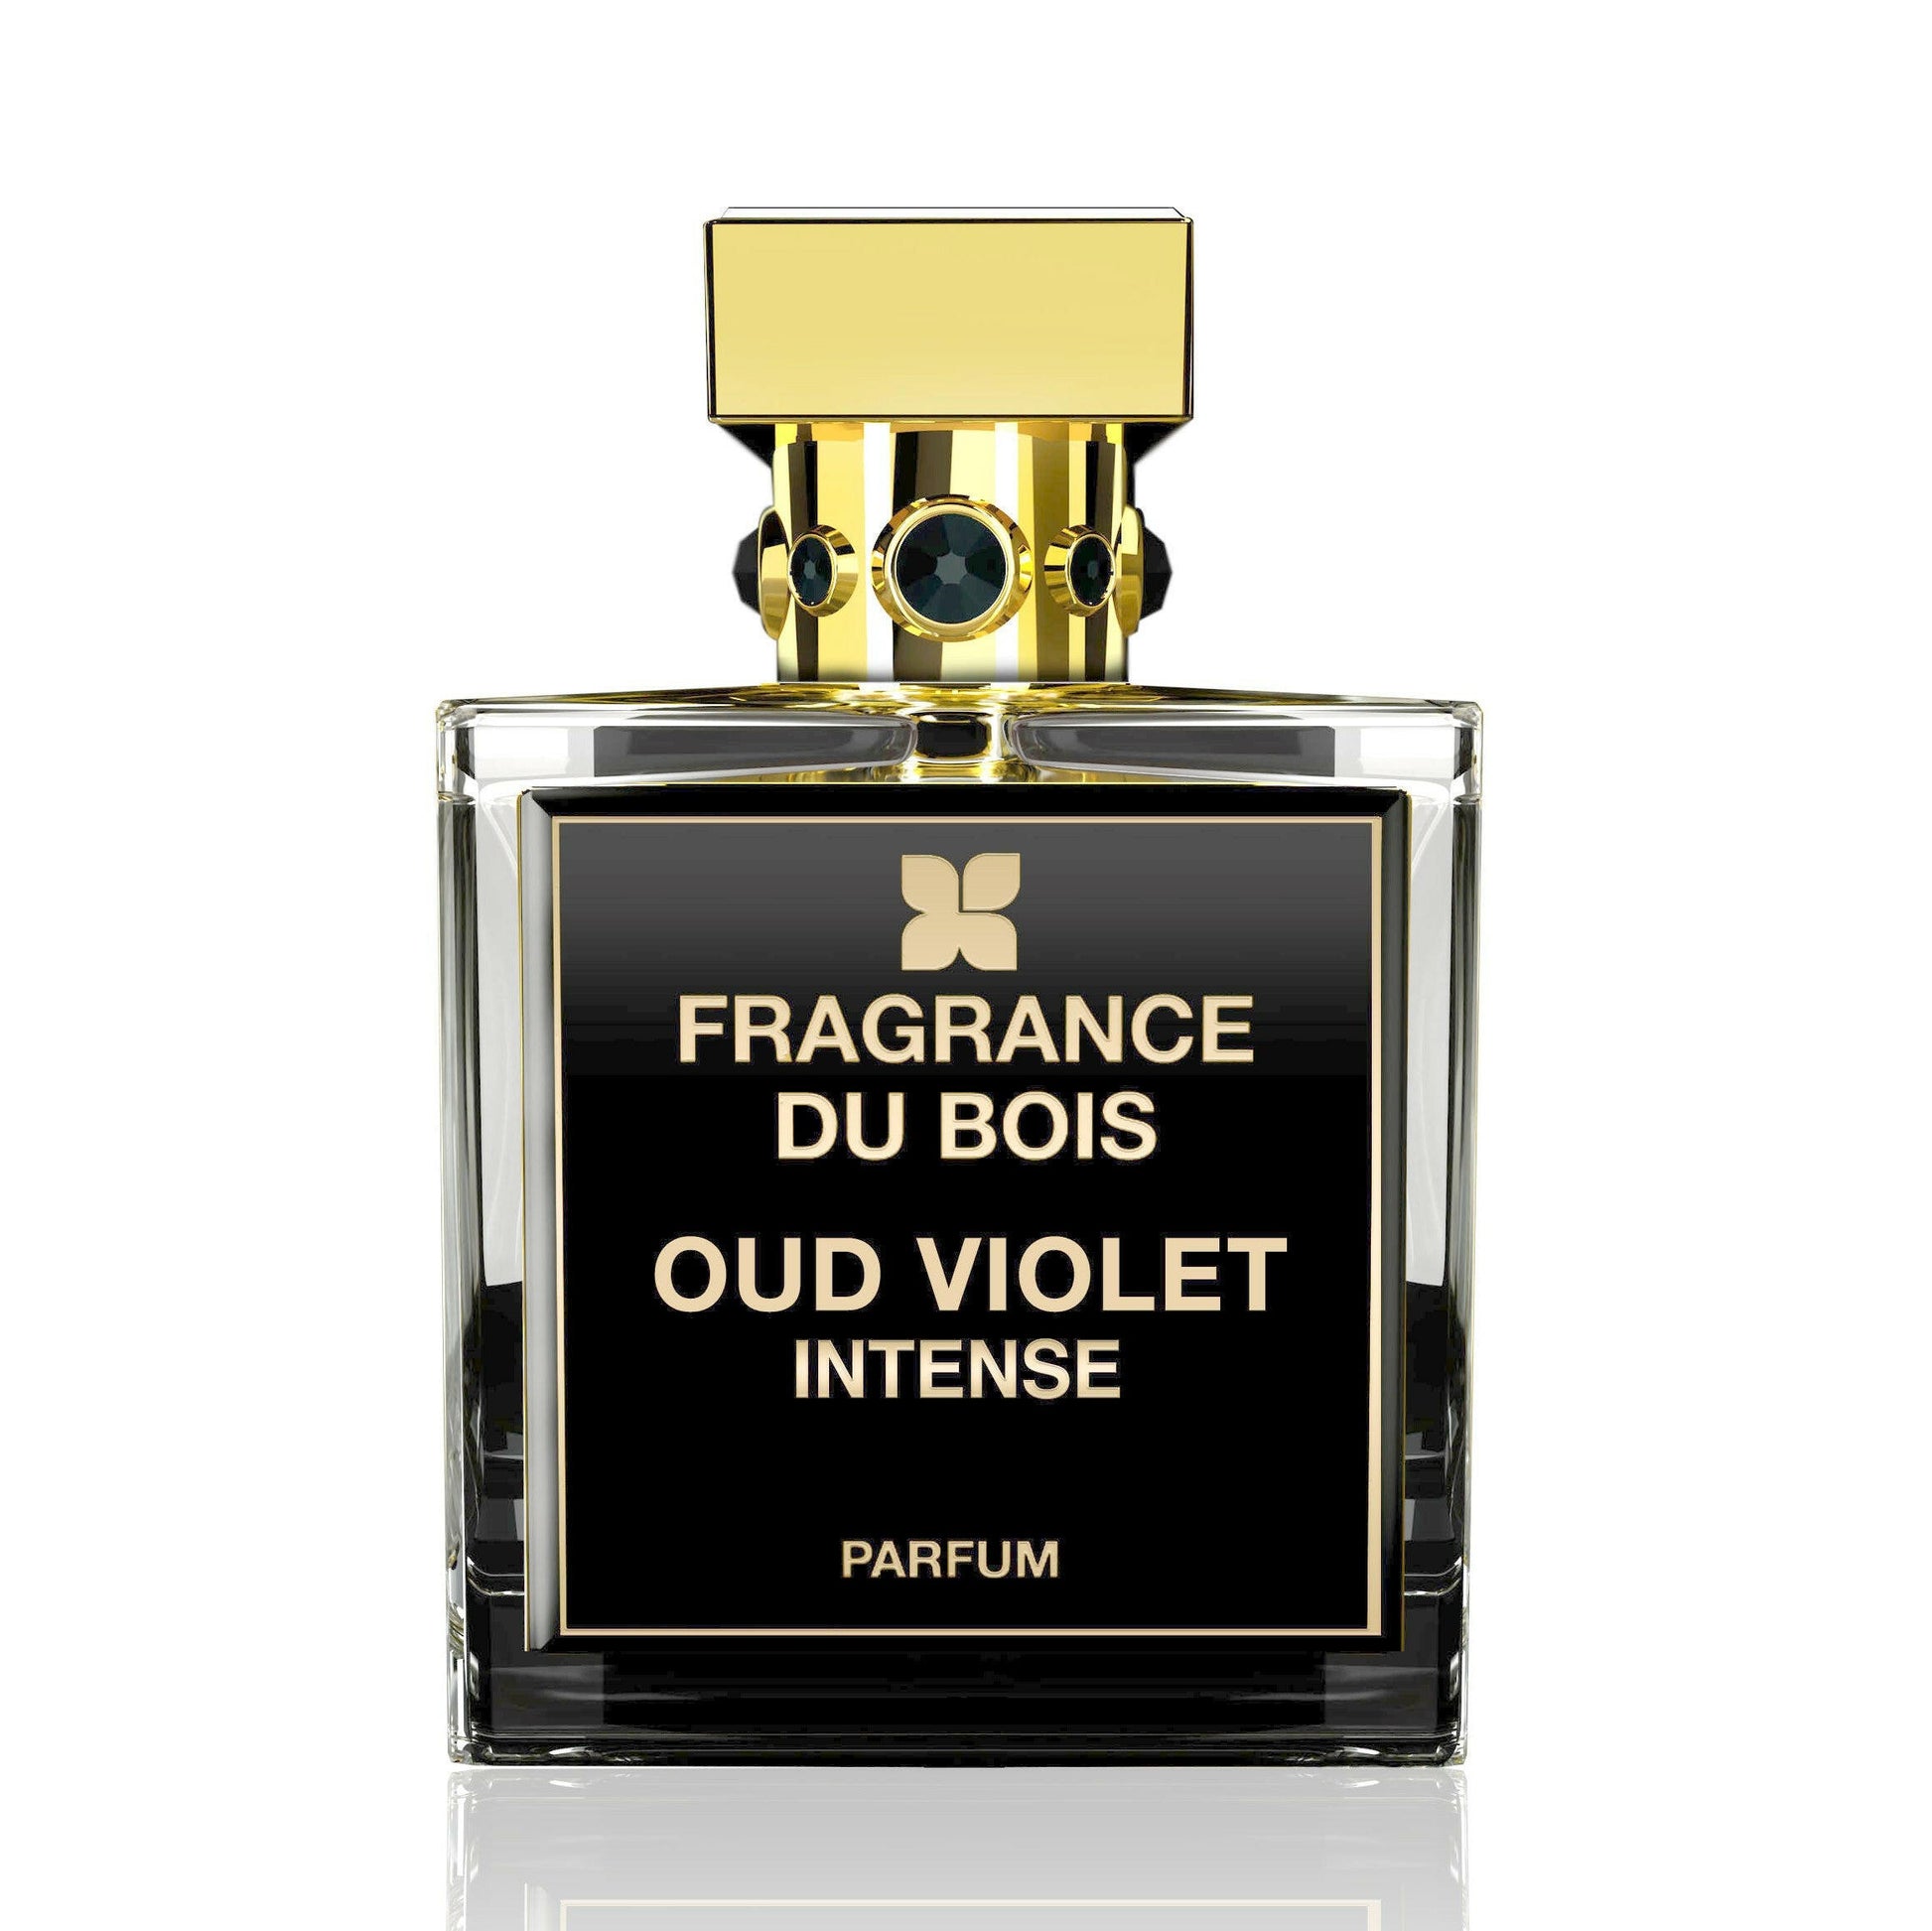 Fragrance Du Bois - Oud Violet Intense